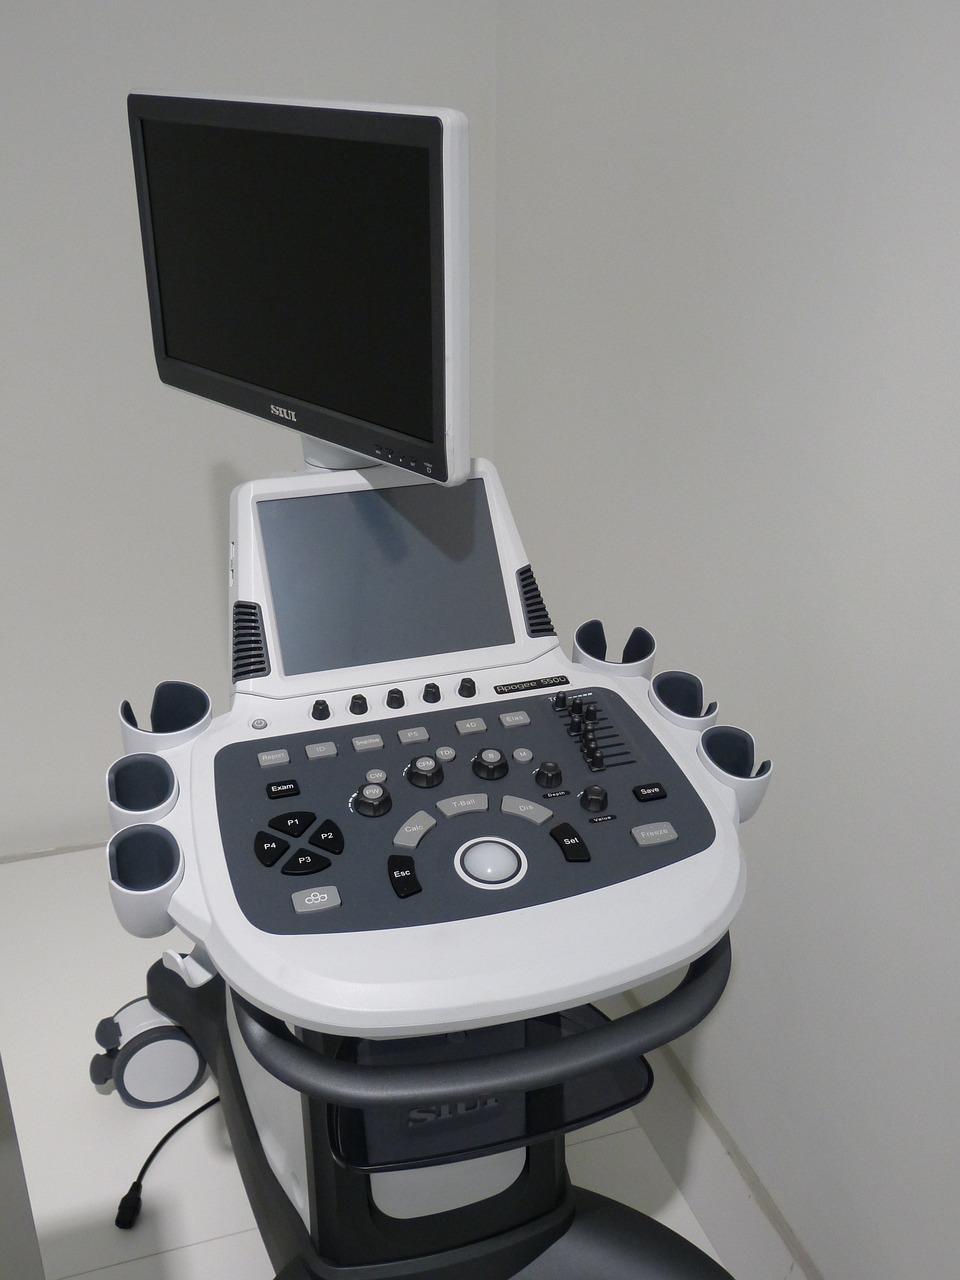 Ultrasonografy przenośne – Sonoscape. Używane ultrasonografy z kolorowym dopplerem sprzedaż